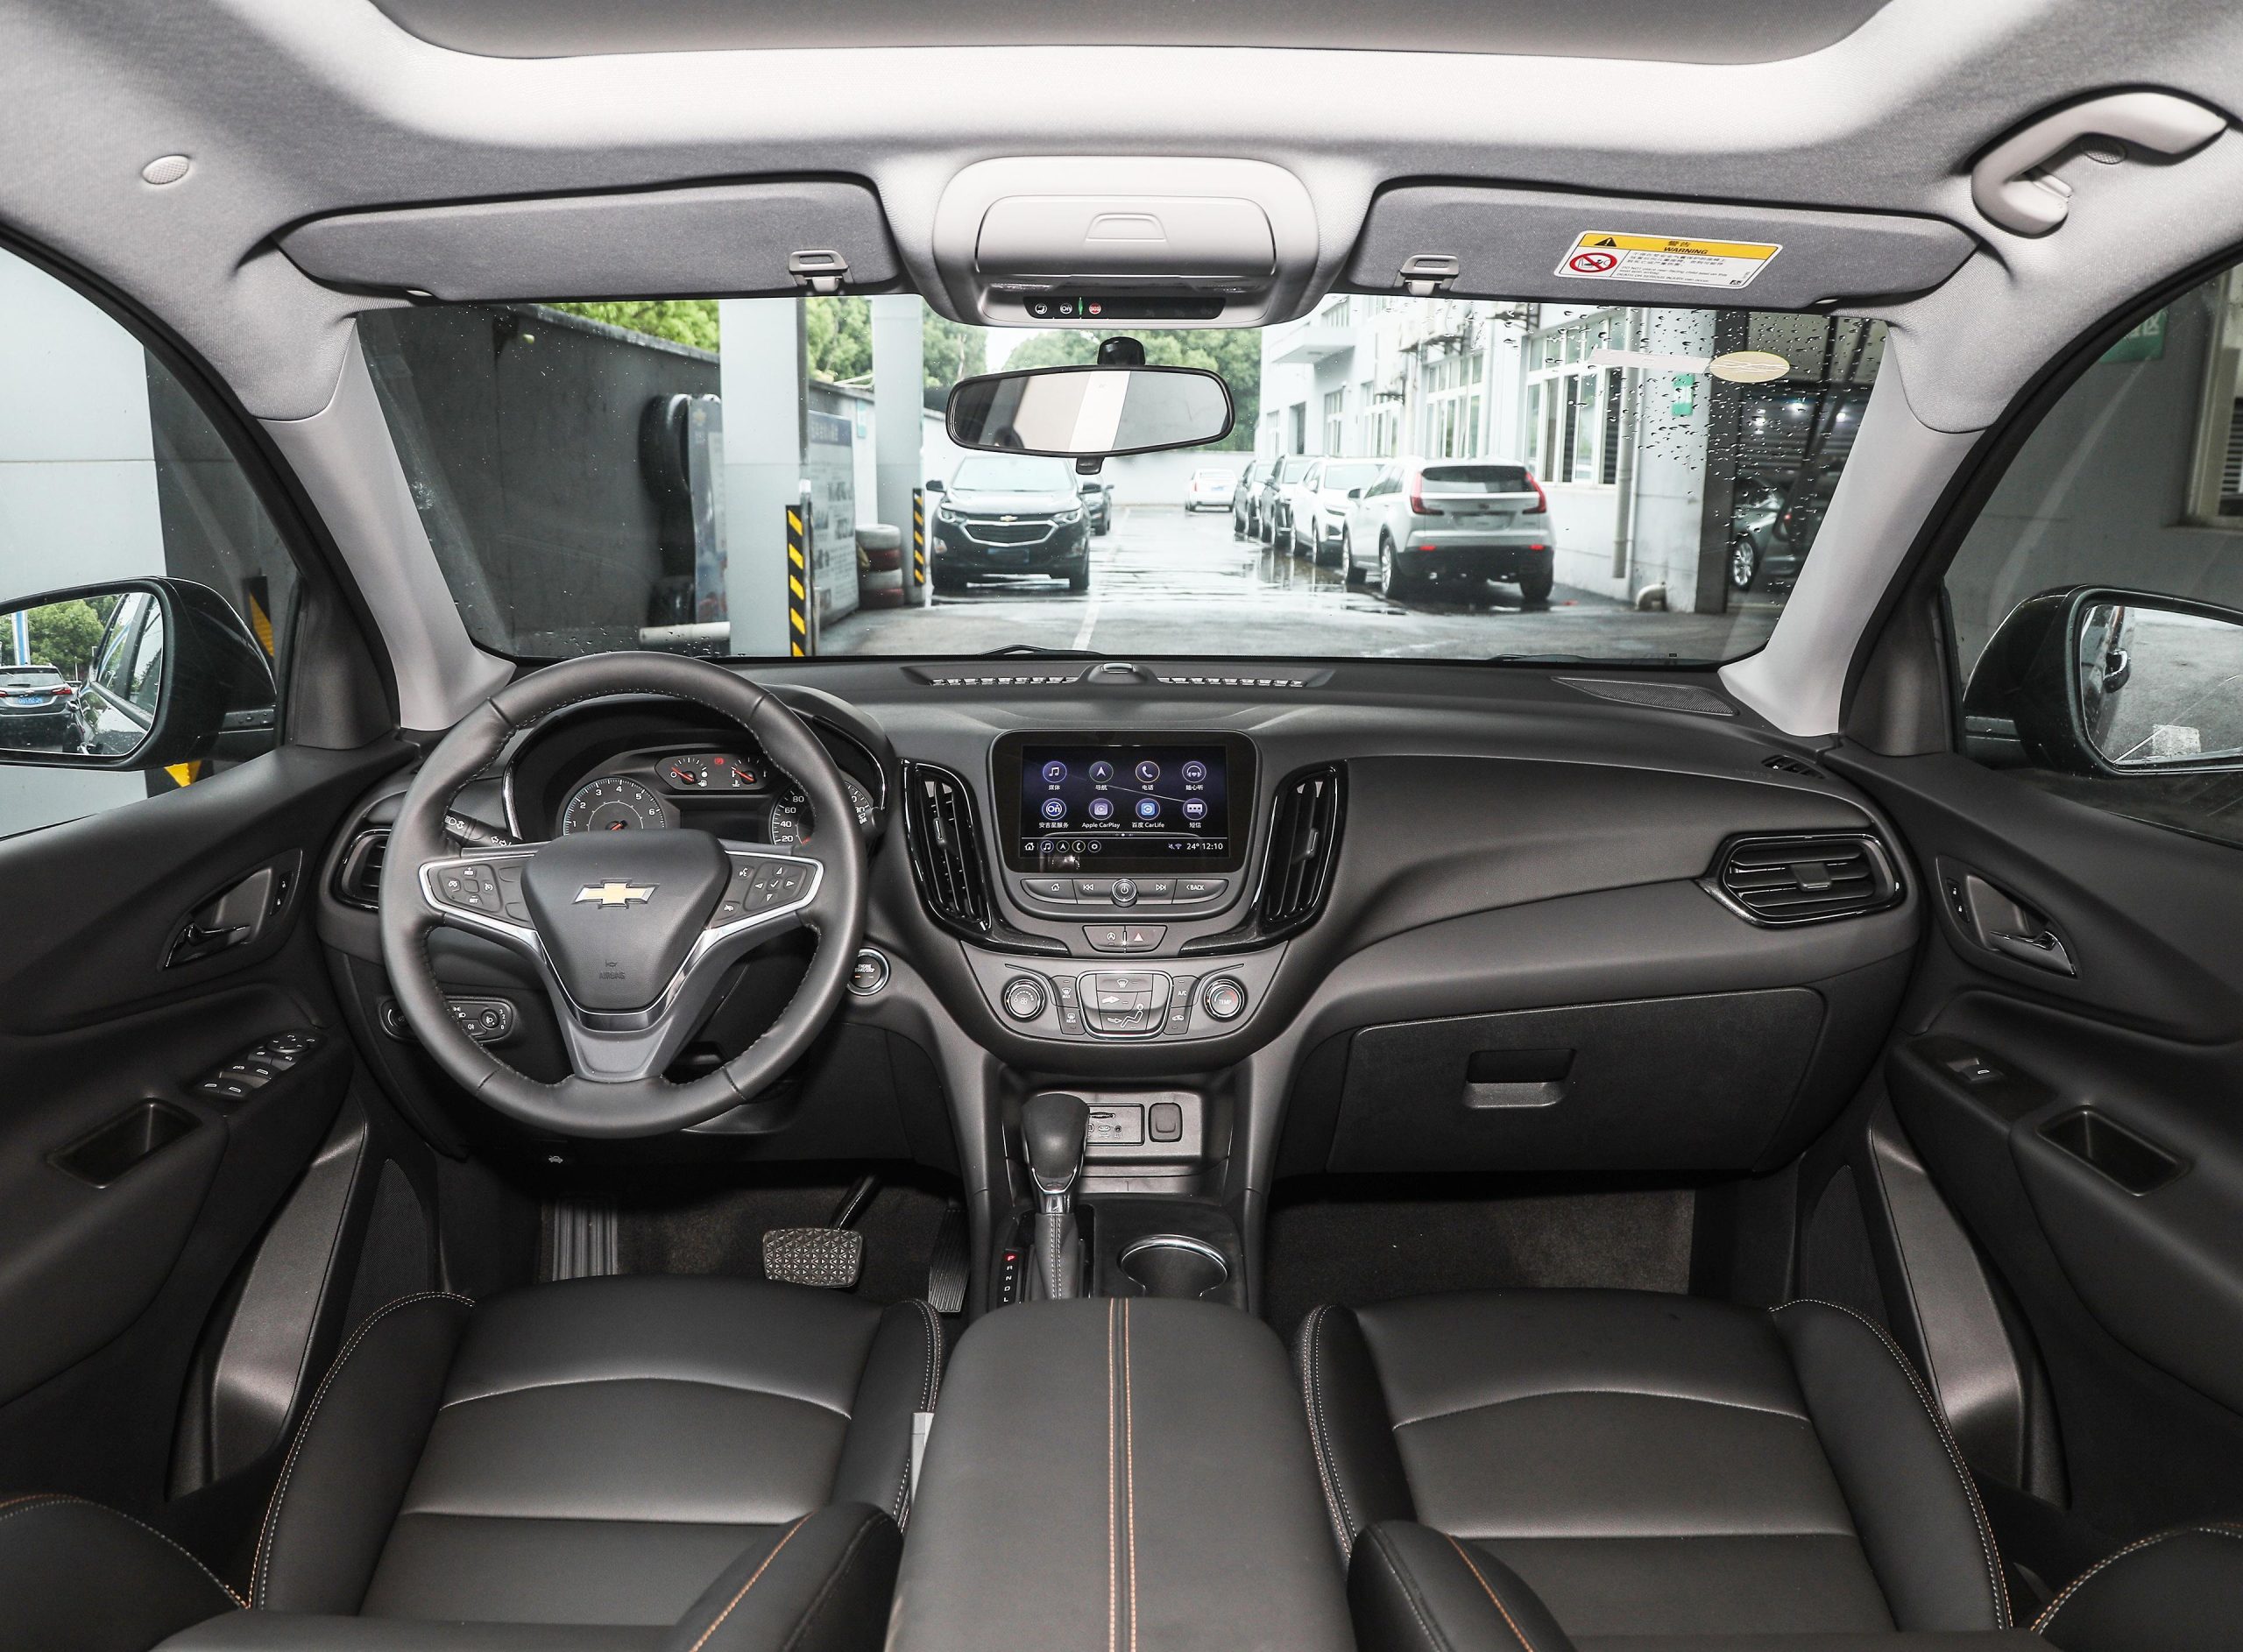 2024 Chevrolet Equinox 1.5T Medium SUV Trade Export - Chevrolet - 6